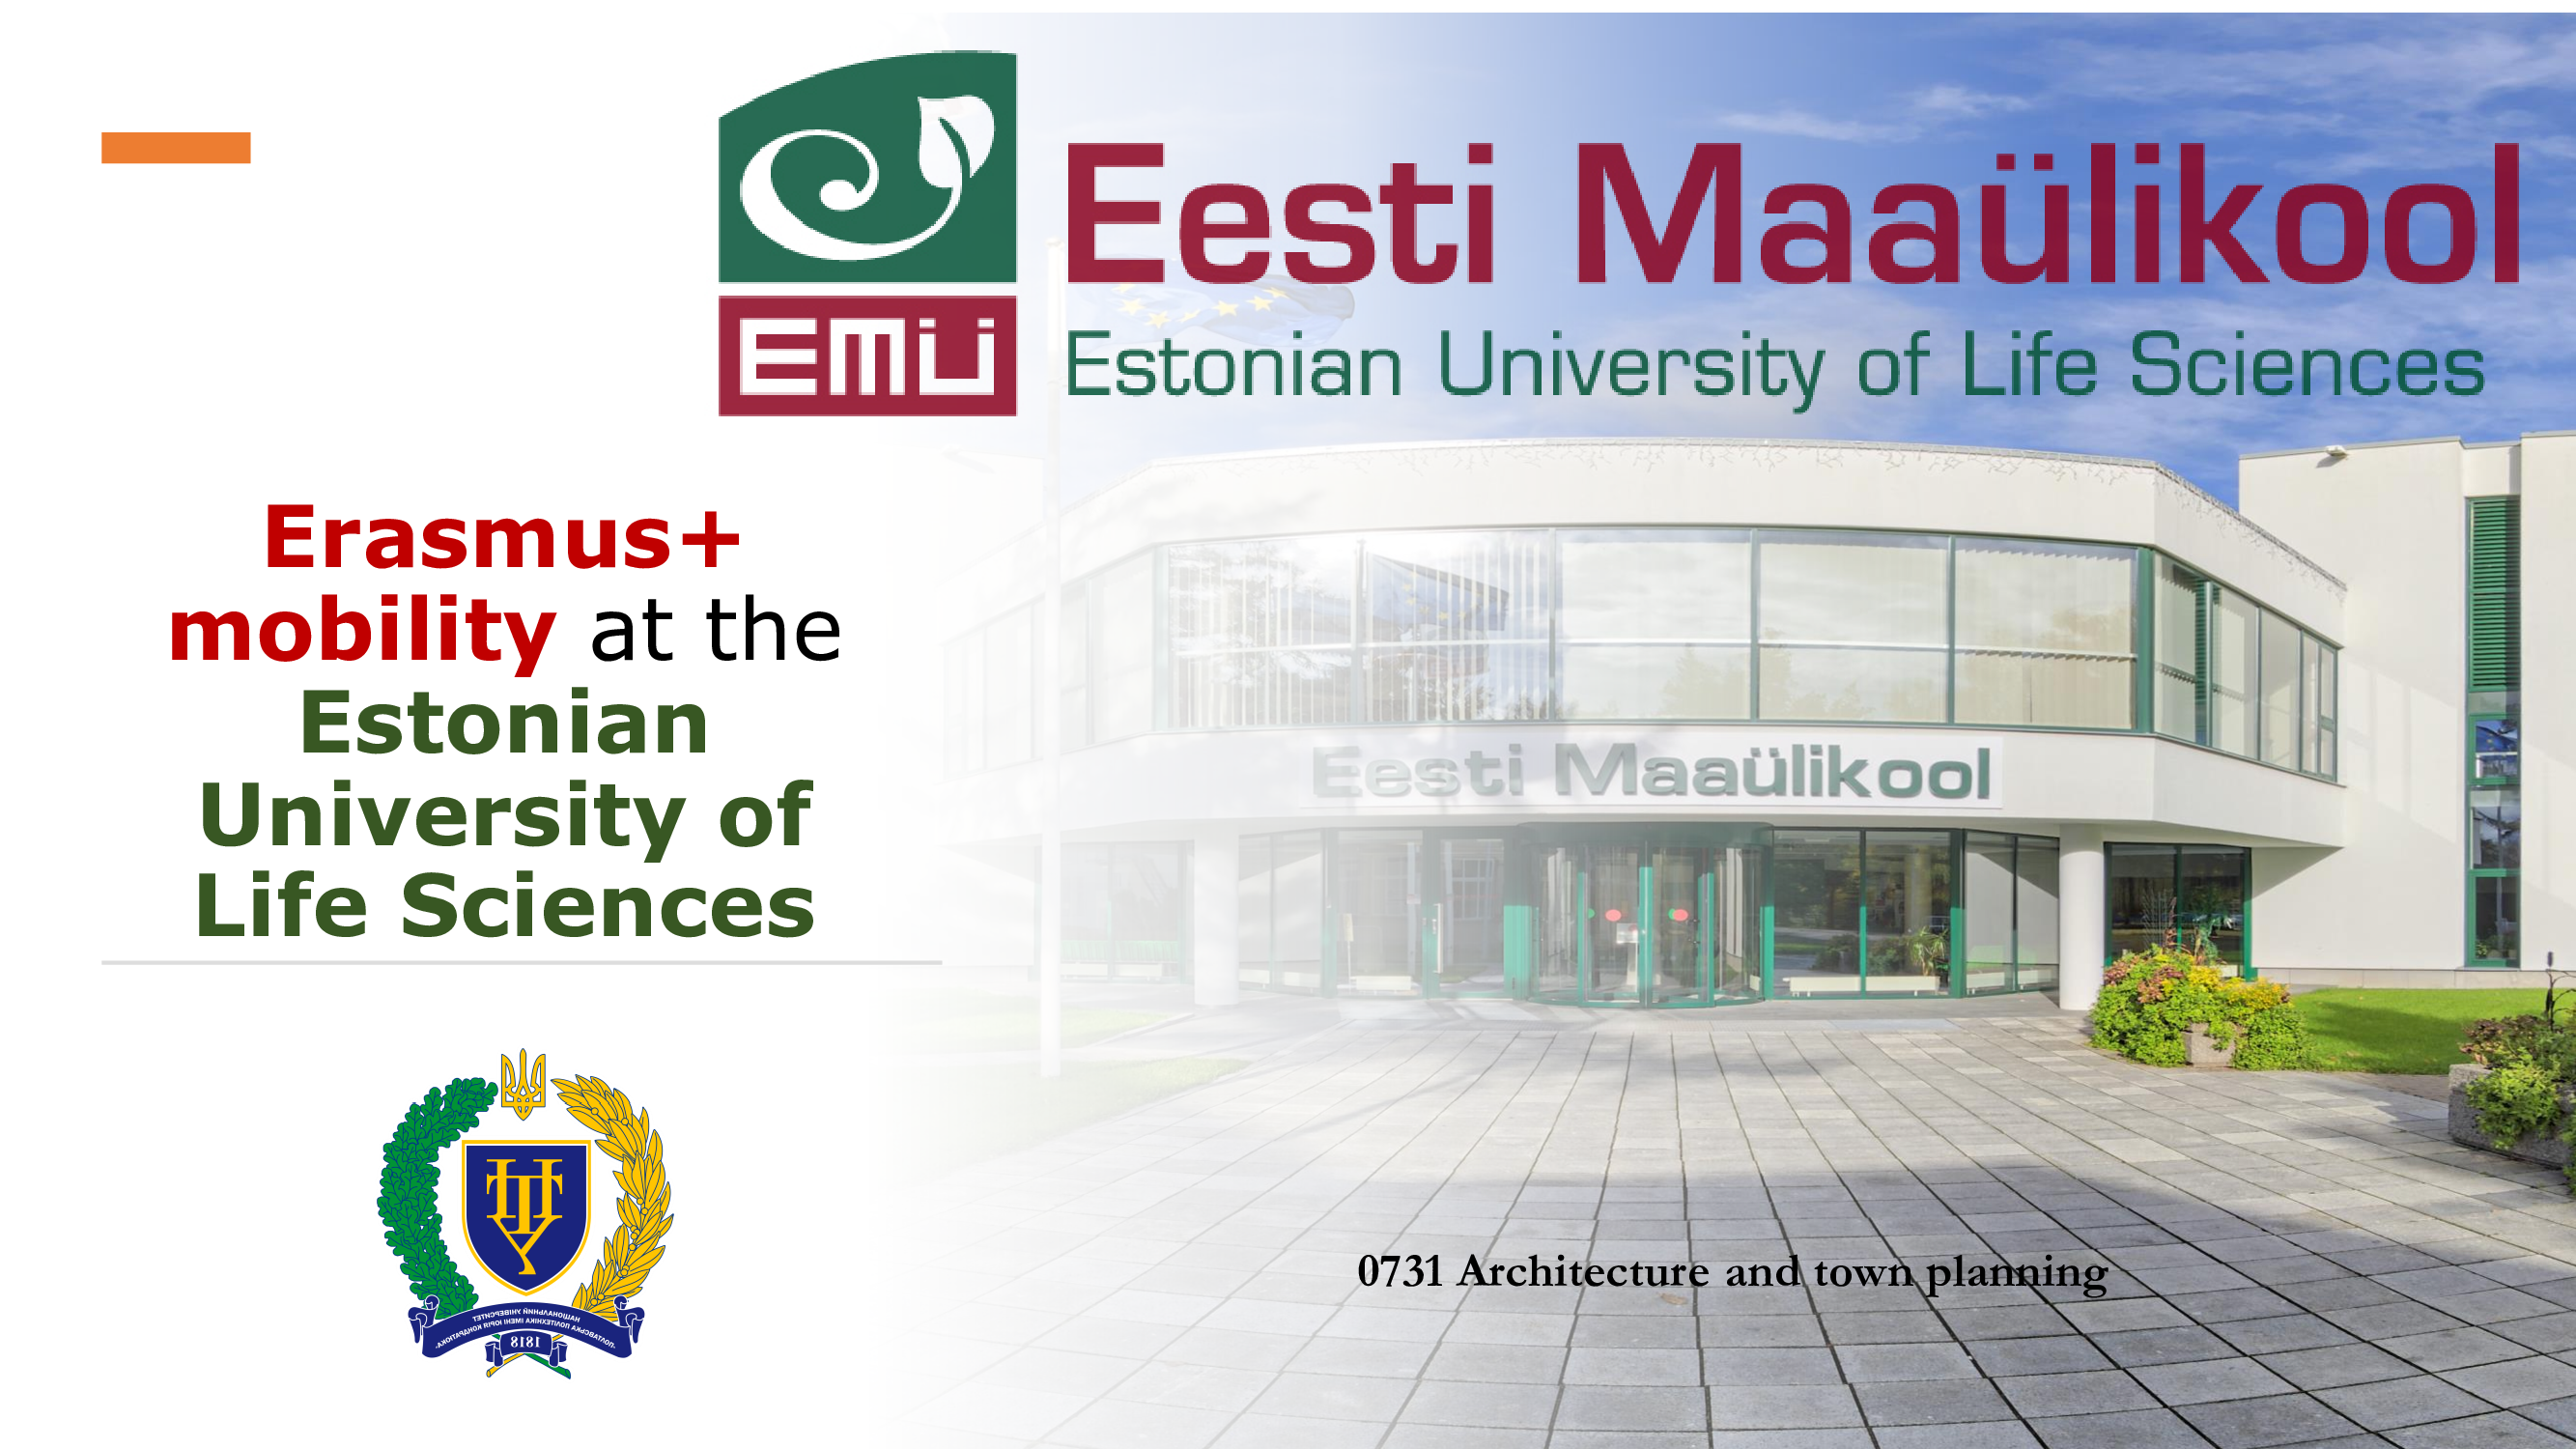 Естонський університет природничих наук запрошує викладача та студентів-архітекторів до програми академічної мобільності Erasmus+